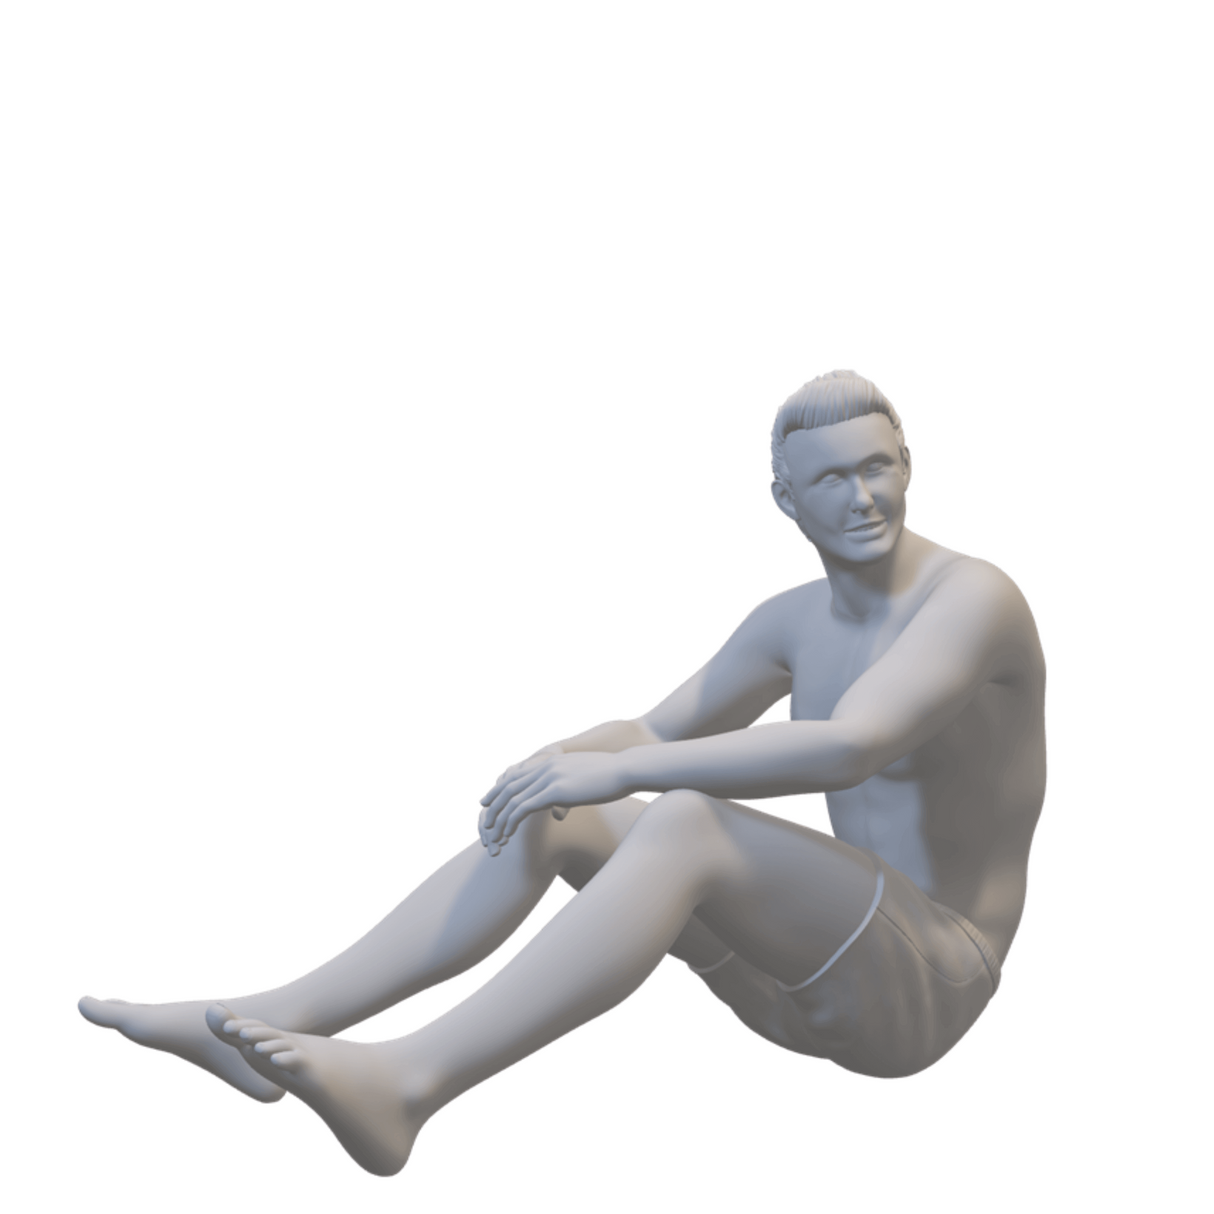 Mann sitzend in Badehose - Miniaturfigur für Dioramen